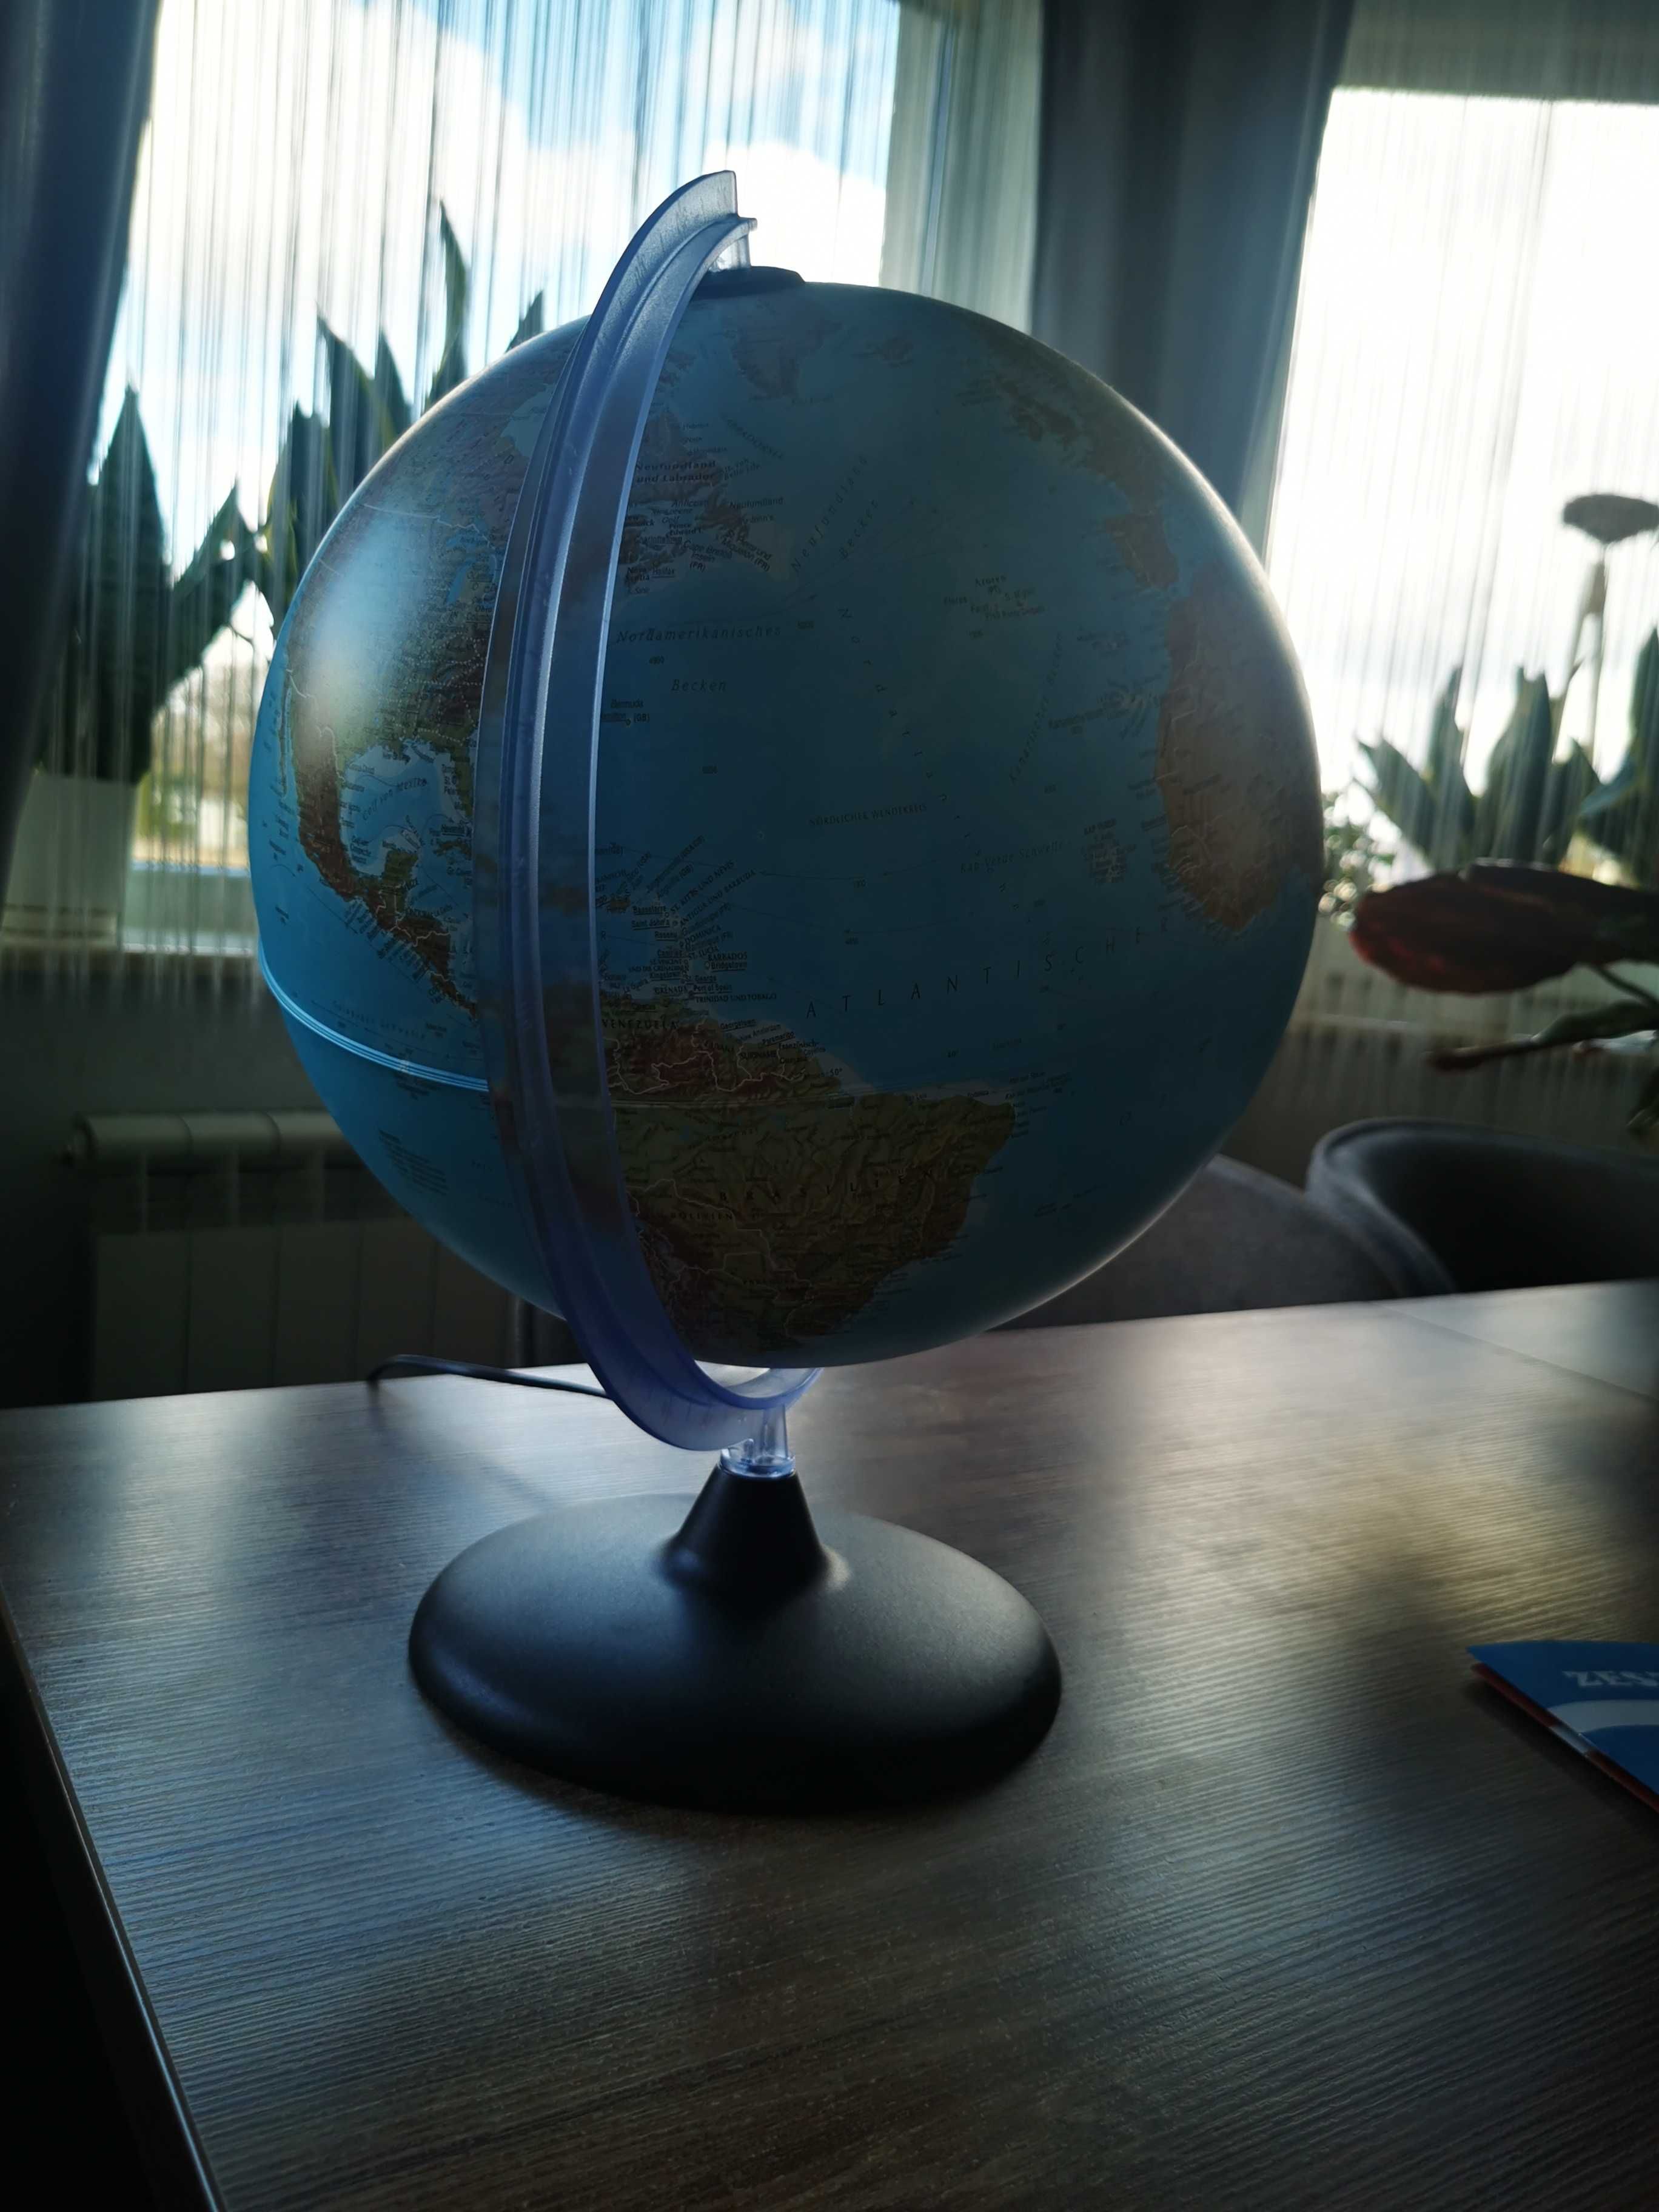 Globus duży, podświetlany, lampka, nowy.